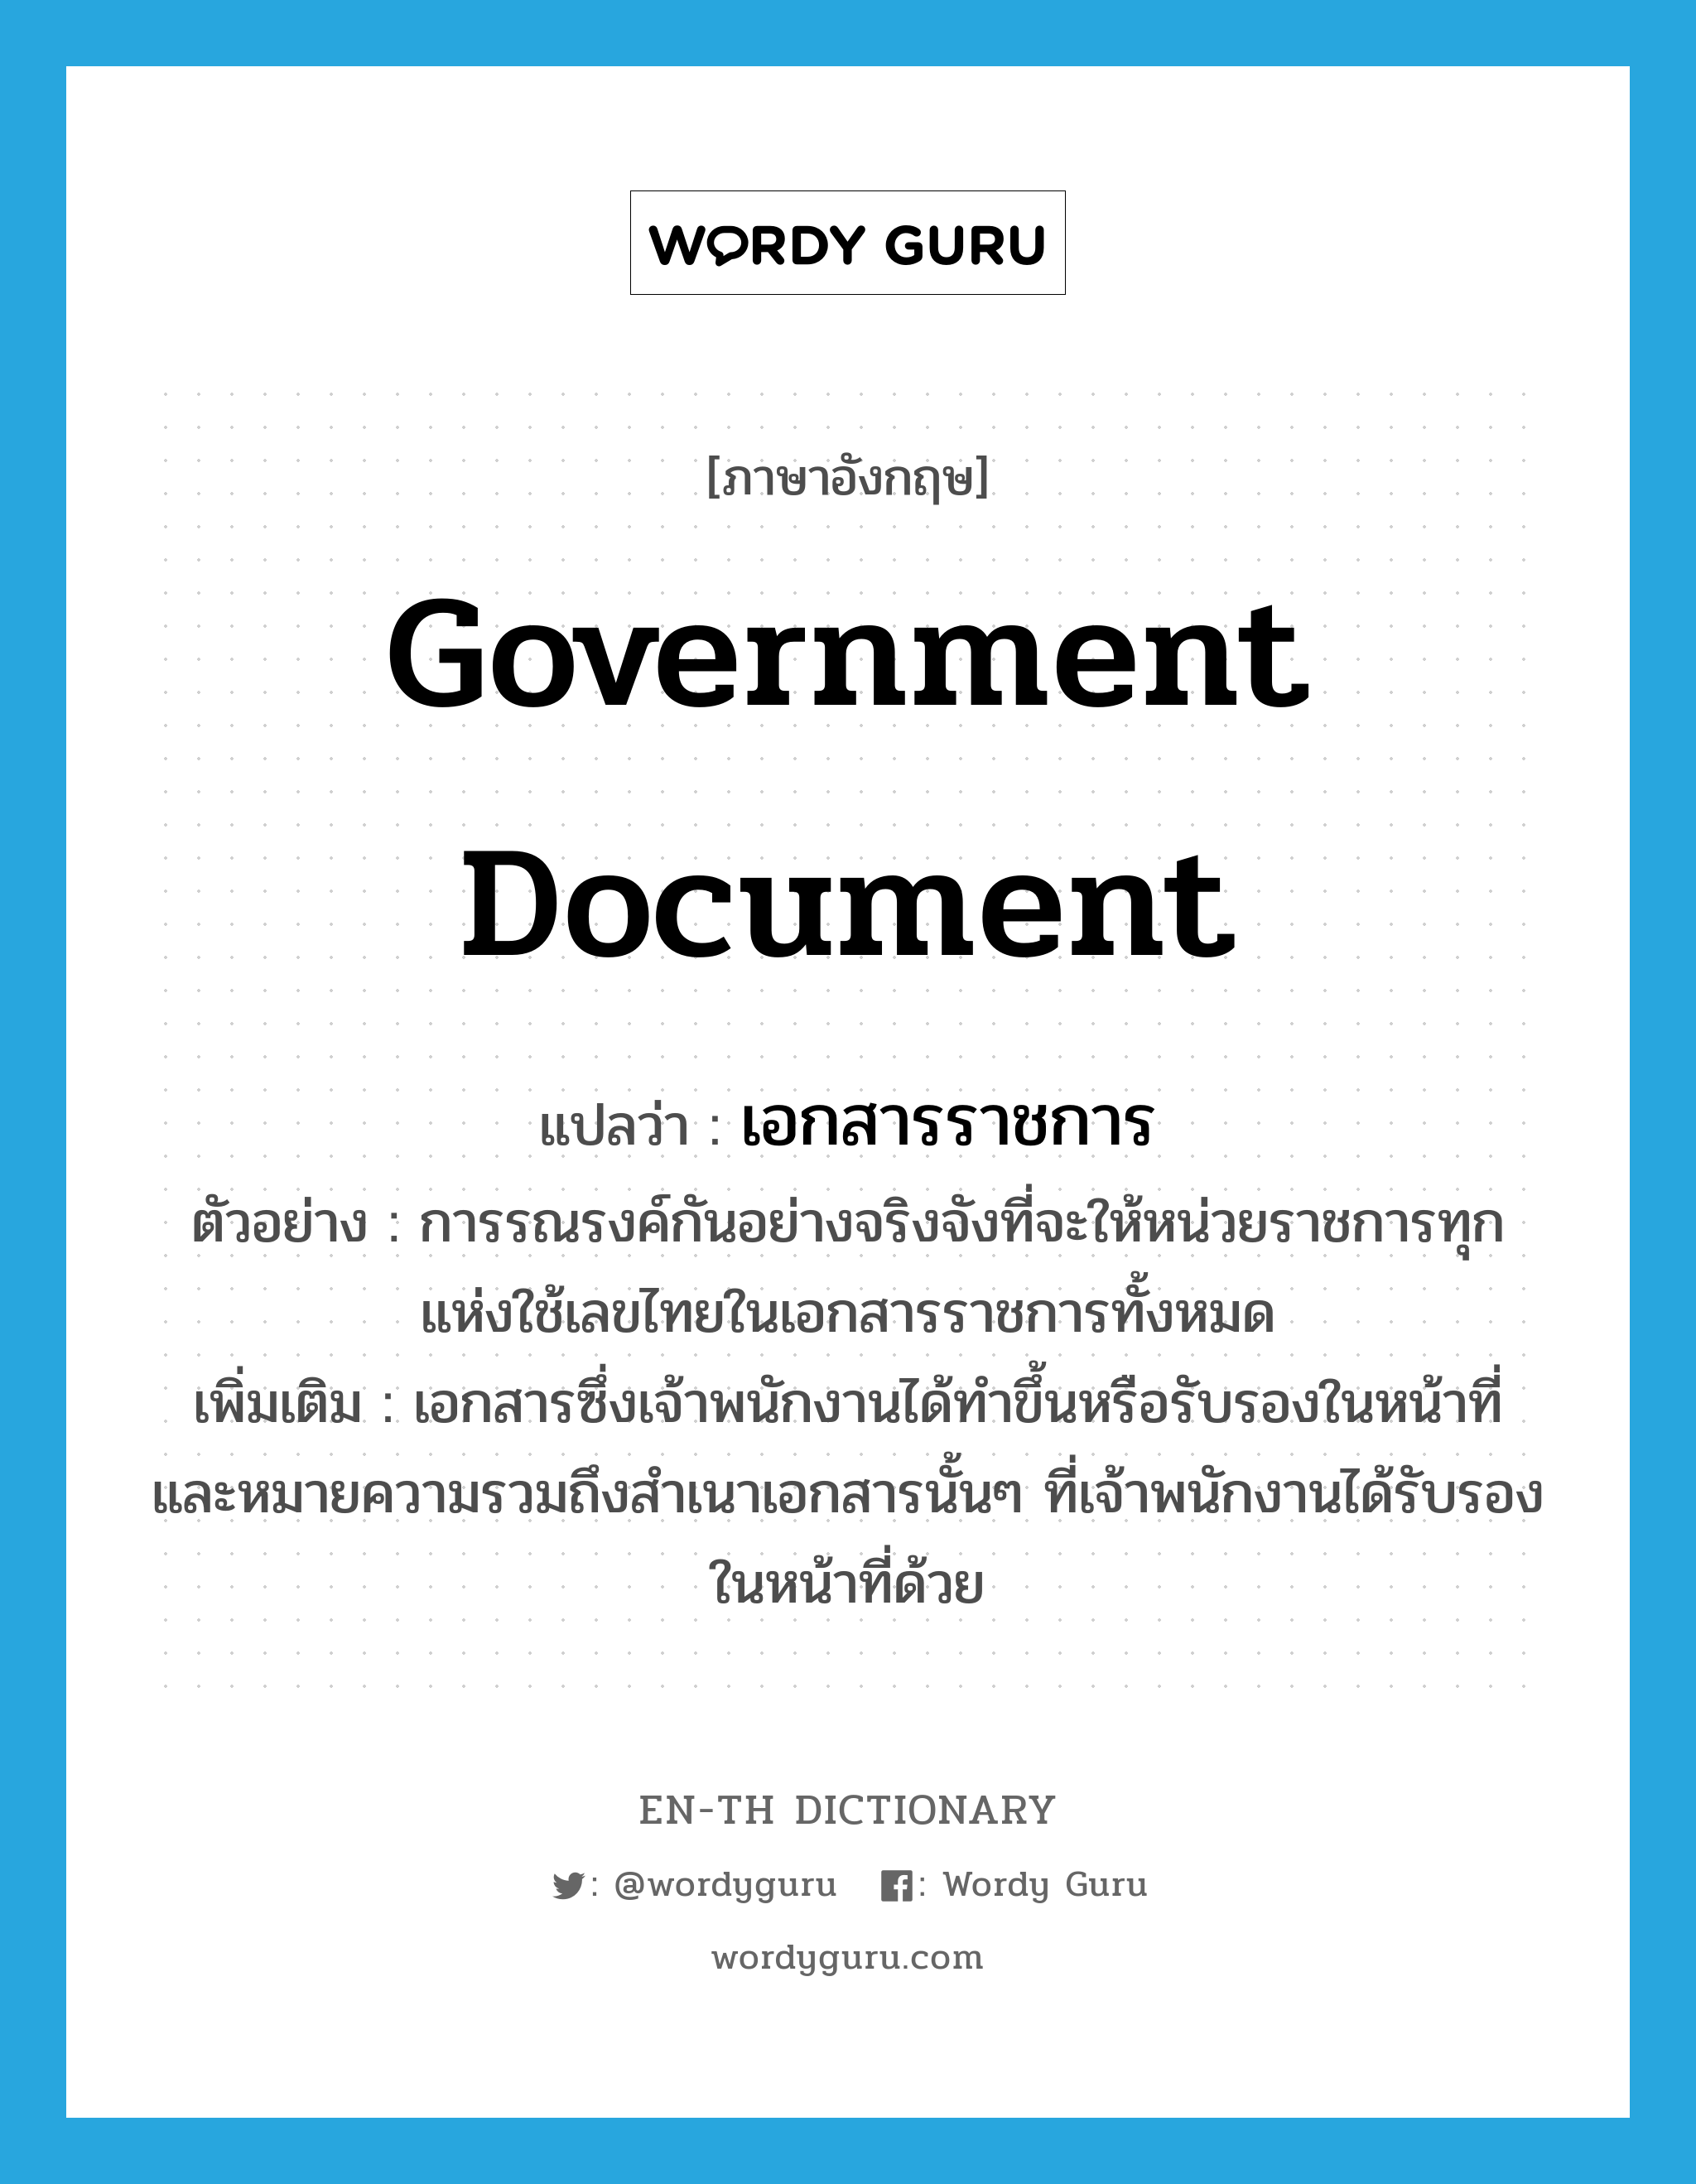 government document แปลว่า?, คำศัพท์ภาษาอังกฤษ government document แปลว่า เอกสารราชการ ประเภท N ตัวอย่าง การรณรงค์กันอย่างจริงจังที่จะให้หน่วยราชการทุกแห่งใช้เลขไทยในเอกสารราชการทั้งหมด เพิ่มเติม เอกสารซึ่งเจ้าพนักงานได้ทำขึ้นหรือรับรองในหน้าที่ และหมายความรวมถึงสำเนาเอกสารนั้นๆ ที่เจ้าพนักงานได้รับรองในหน้าที่ด้วย หมวด N